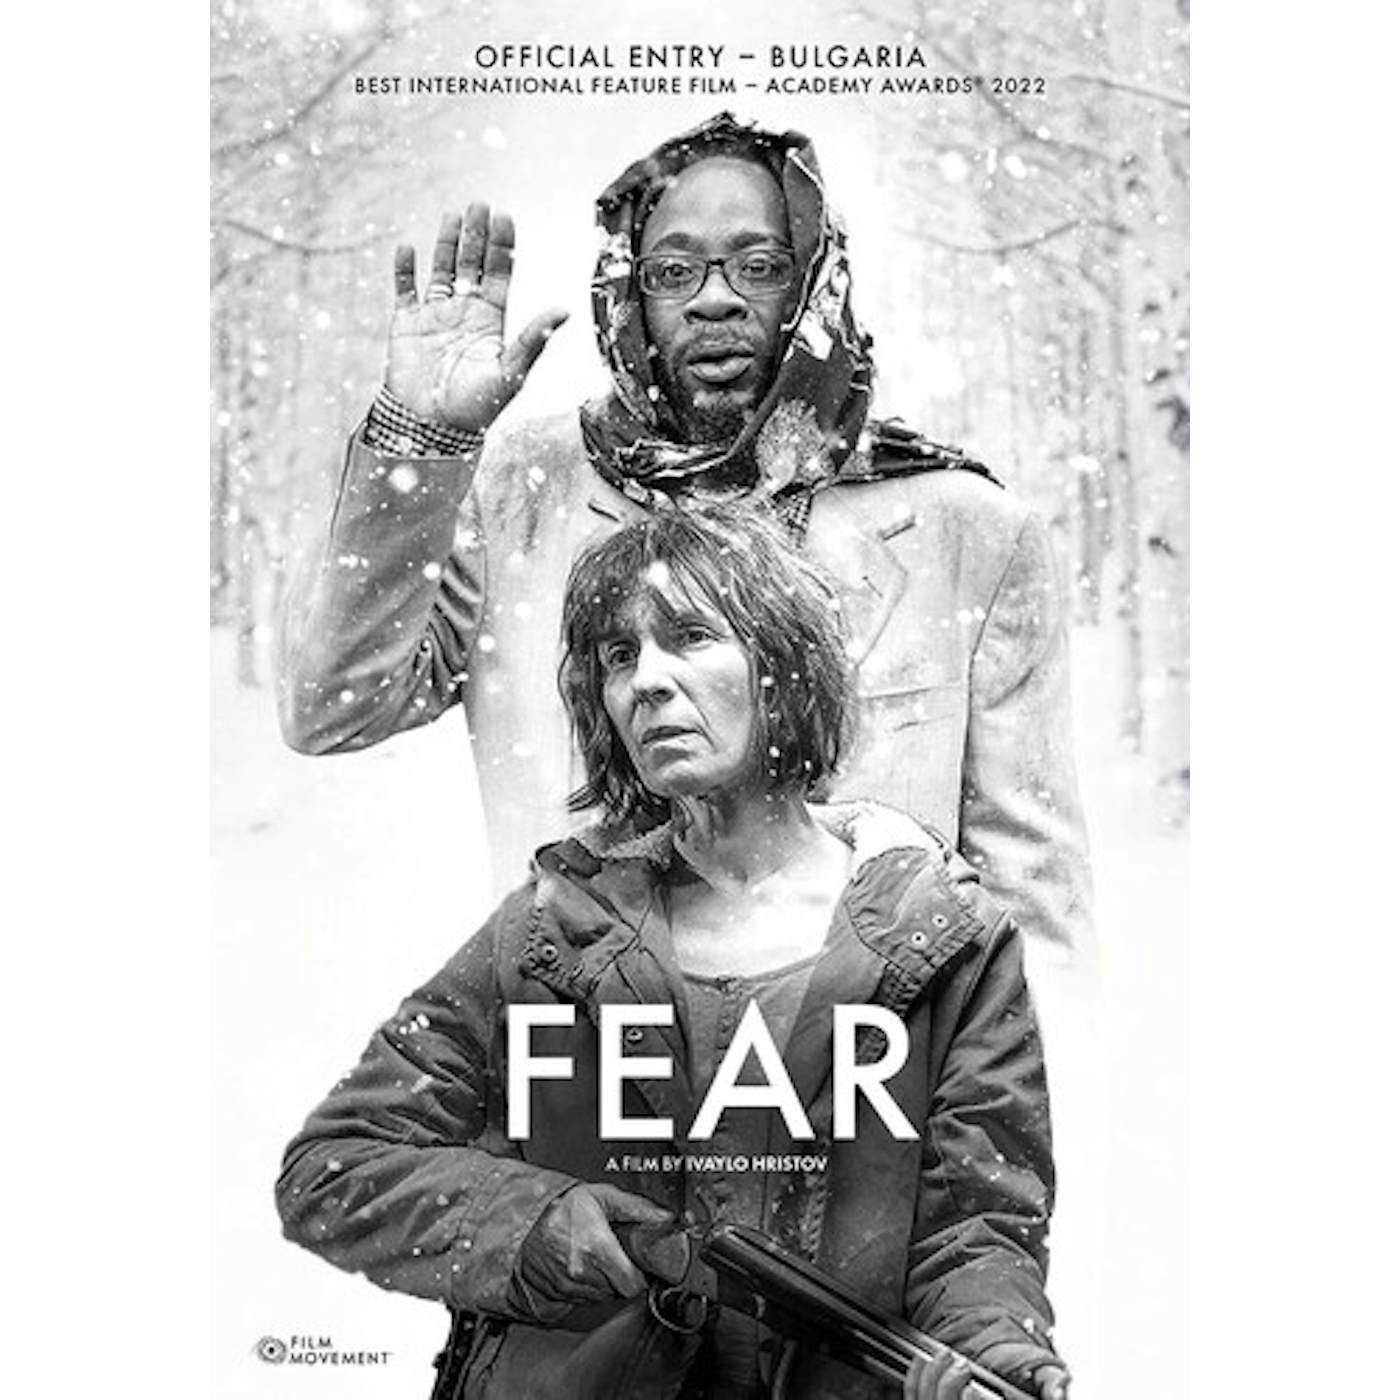 FEAR DVD